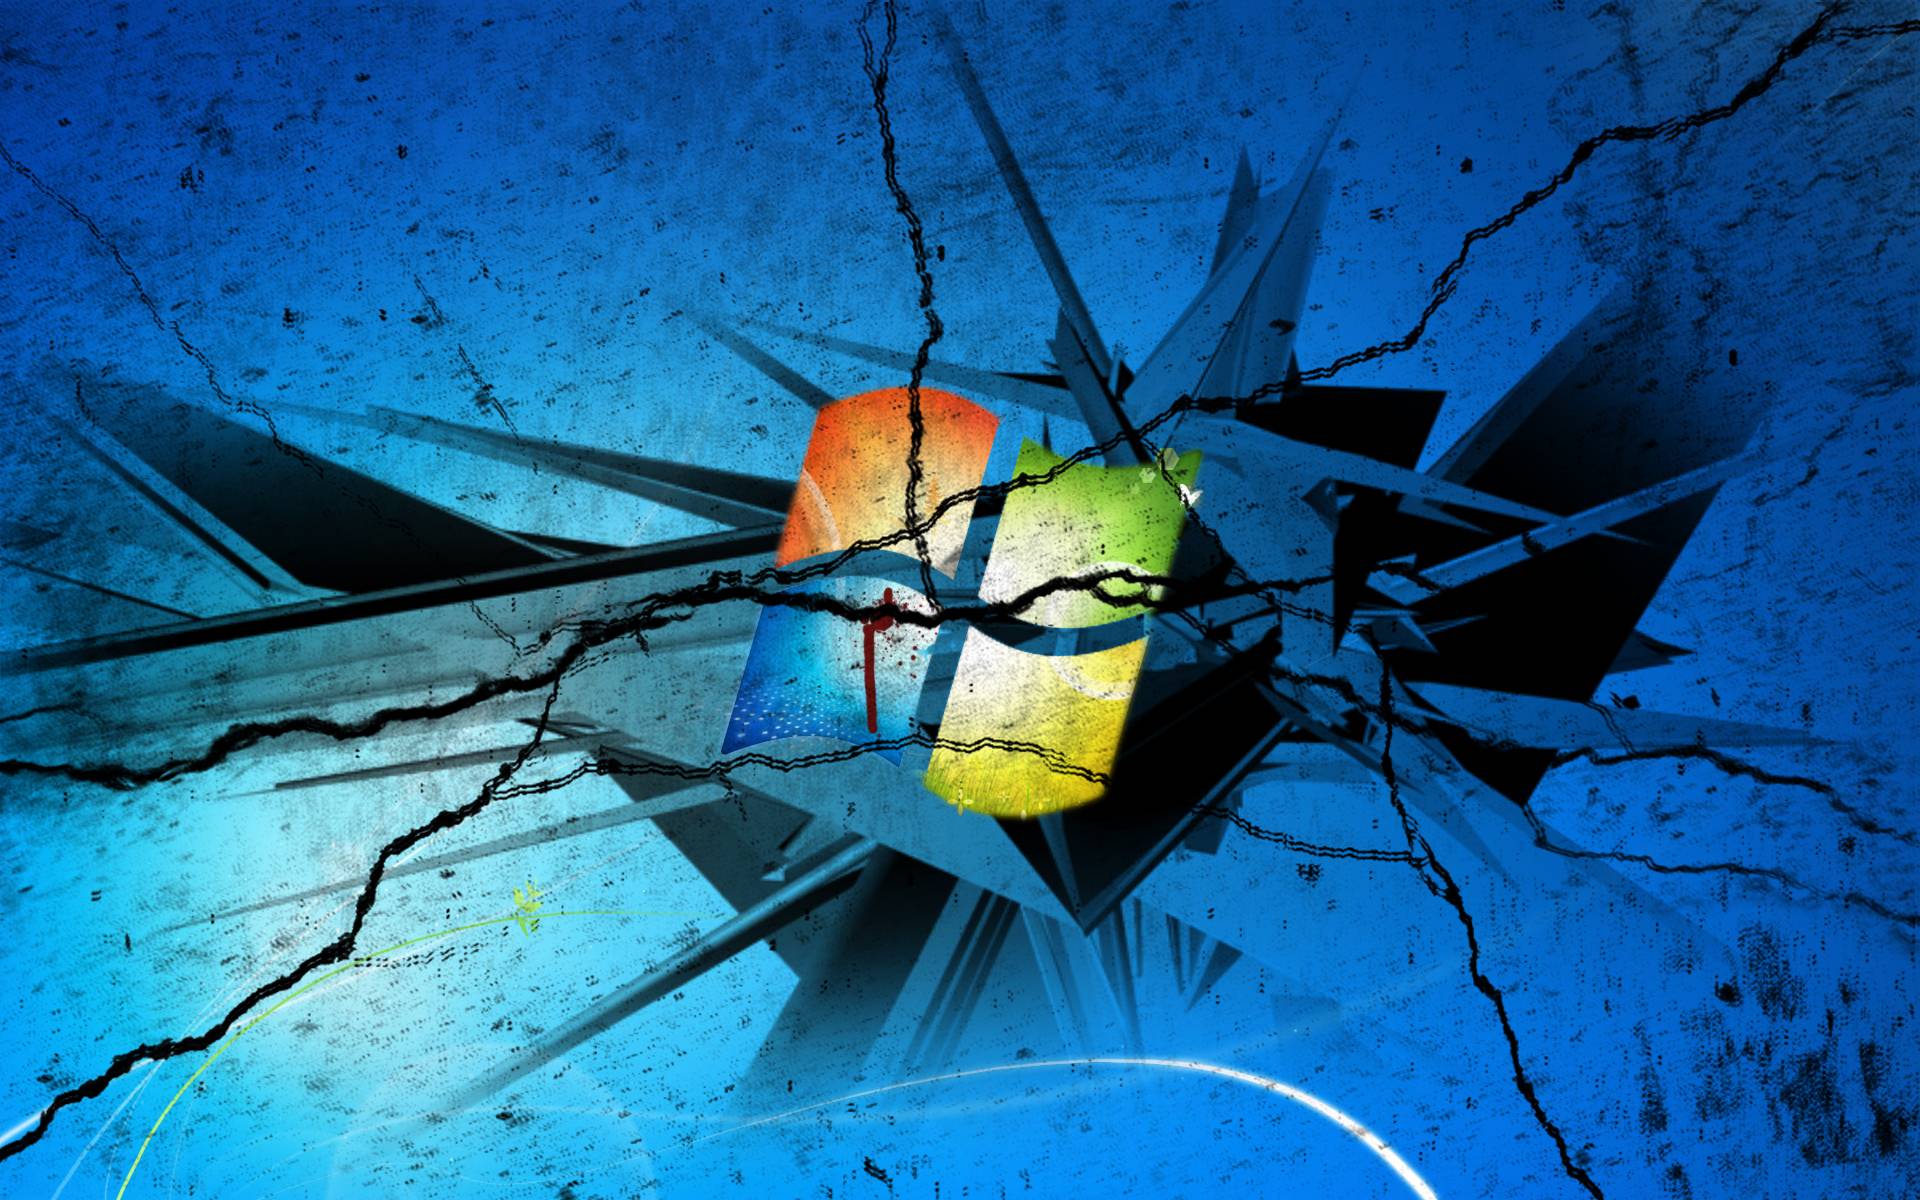 Windows 7 Broken Screen Desktop Background Wallpaper